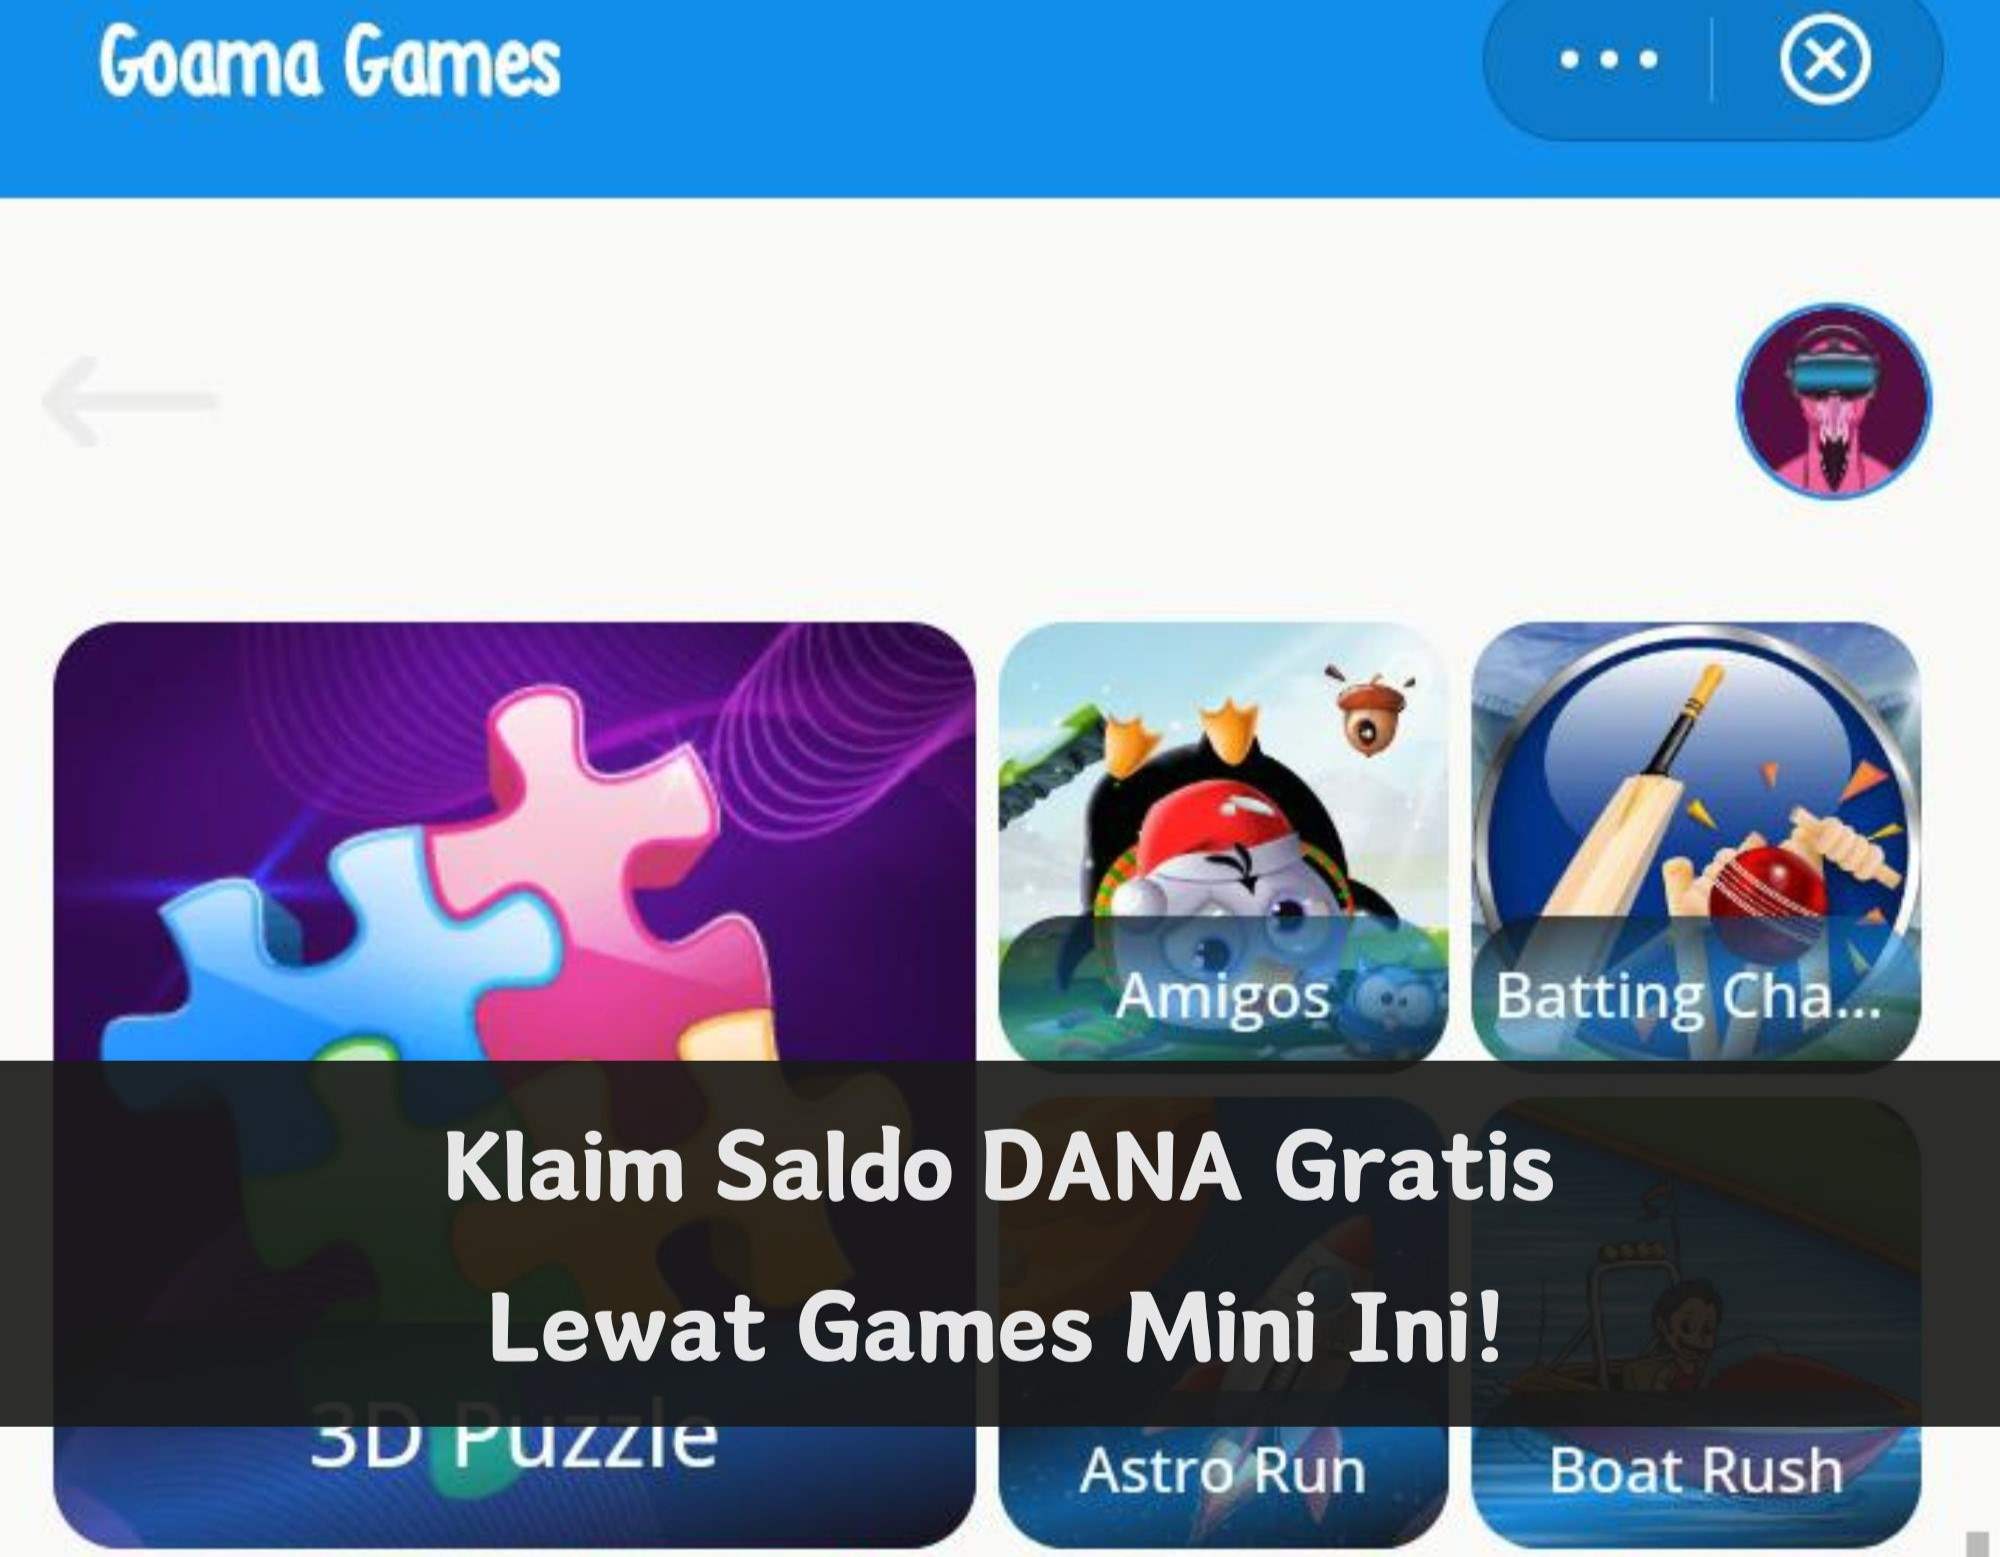 Klaim Saldo DANA Gratis Disini! Cukup Main Games Mini di Aplikasi, Cair Langsung ke Akun Kamu